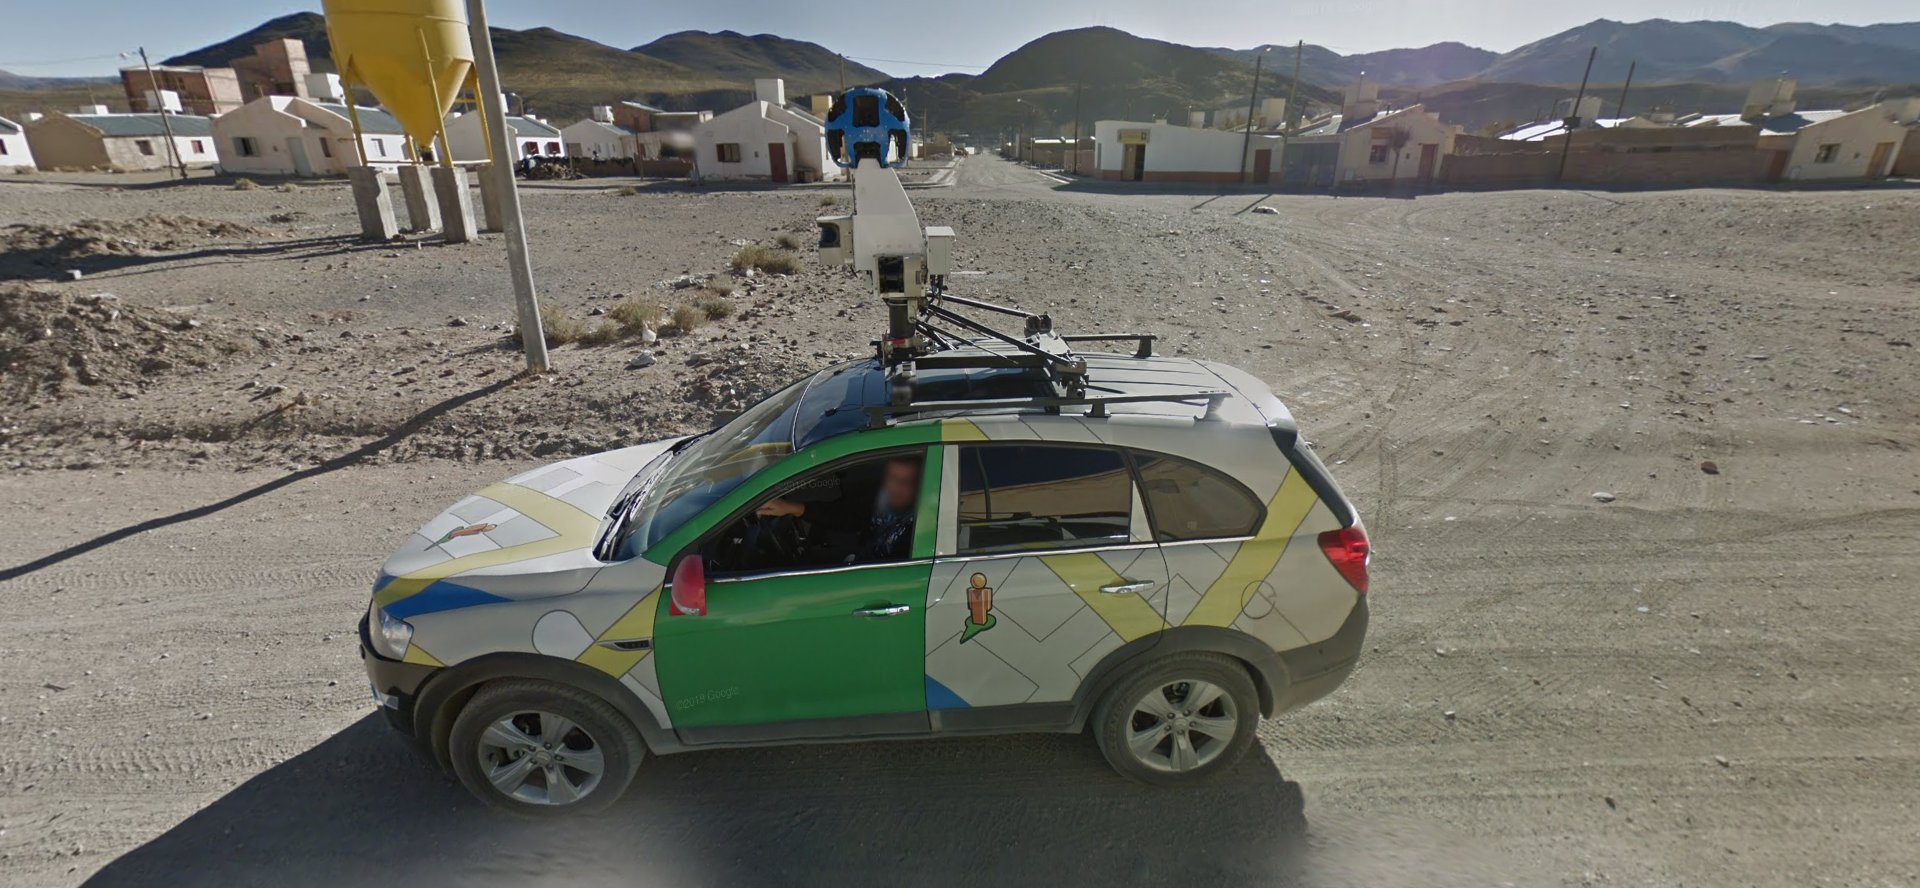 Google Maps — 15 лет. Вот самые неожиданные места и сюжеты, которые можно на них увидеть Google, Япония, Россия, можно, Сервису, костюмах, внутриНорильск, Загадочные, гуляют, GoogleКалужская, цветов, терапии, область, Дорожная, ситуацияНьюМексико, Идеальная, побродить, одиночествОсака, мануальной, Центр